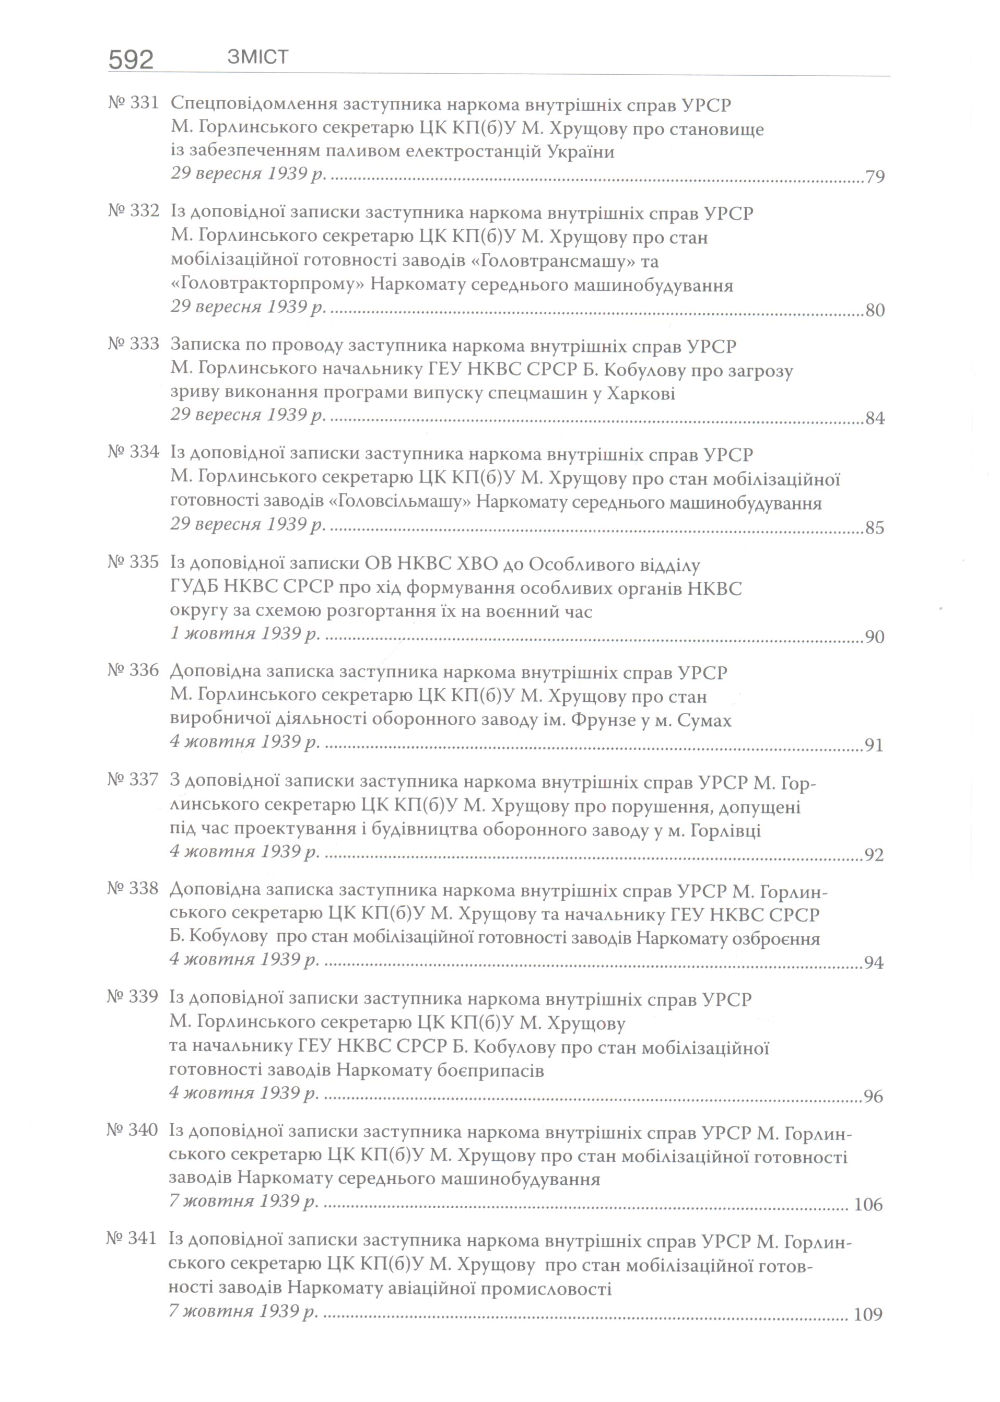 Радянські орани державної безпеки у 1939 - червні 1941 р.: документи ГДА СБ України